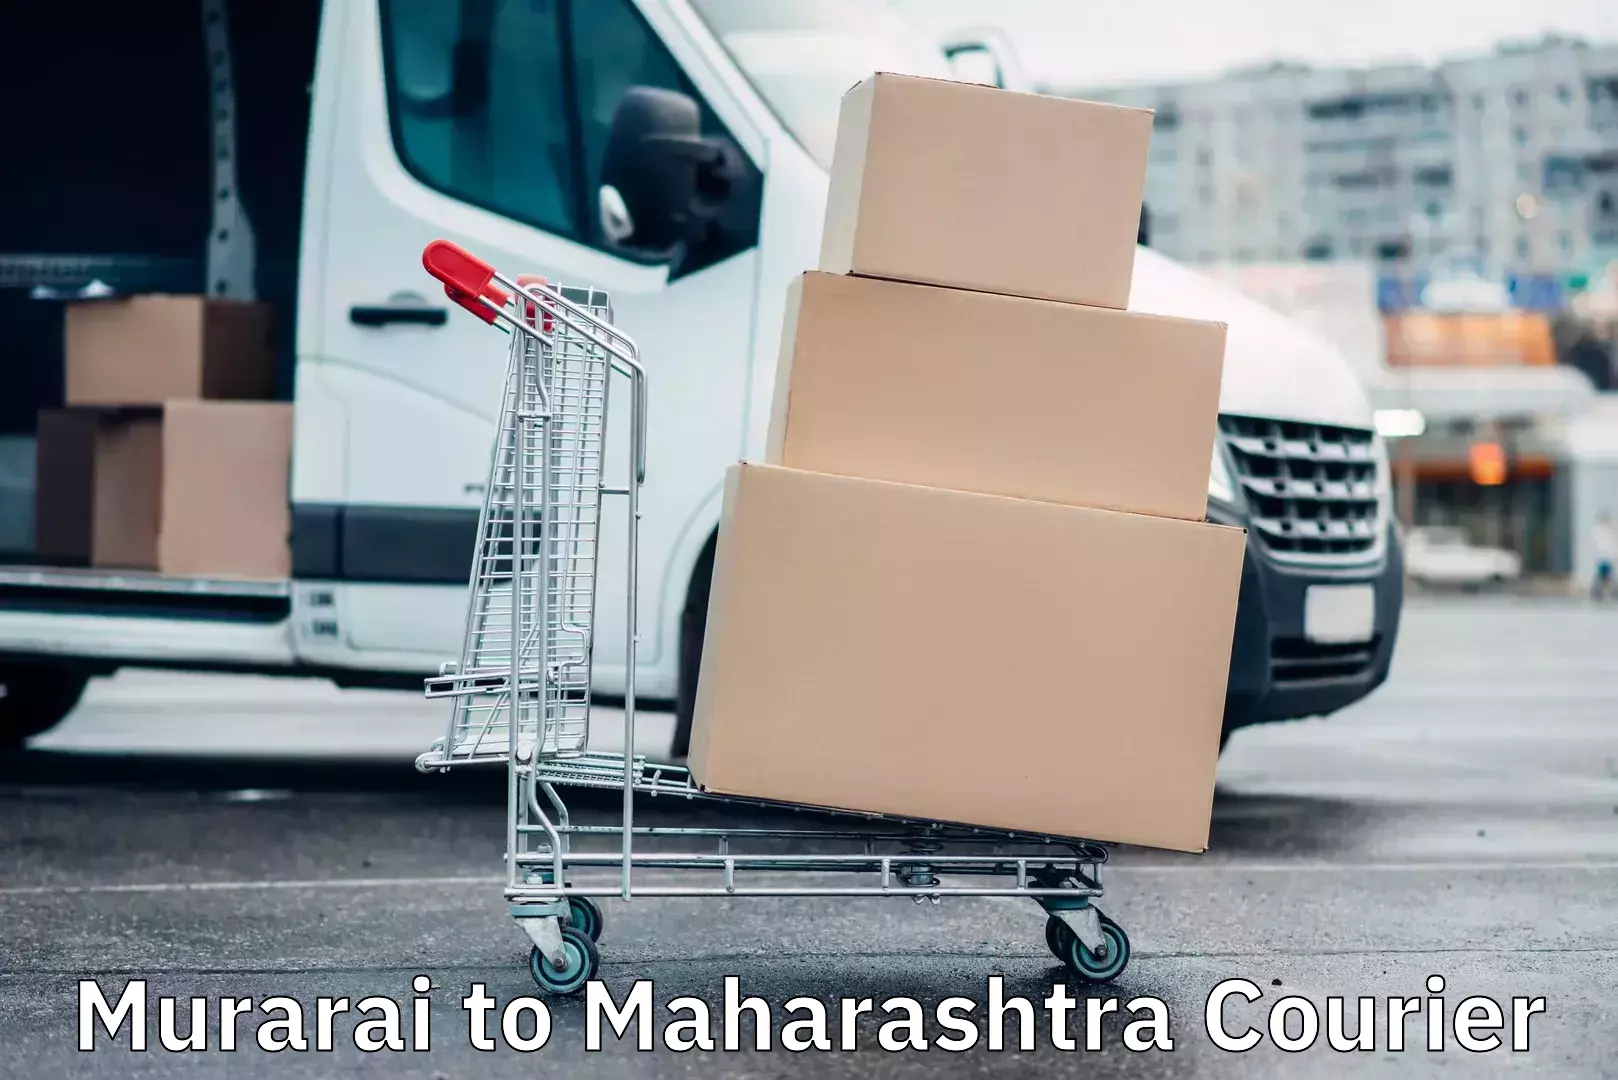 Cargo delivery service Murarai to Maharashtra